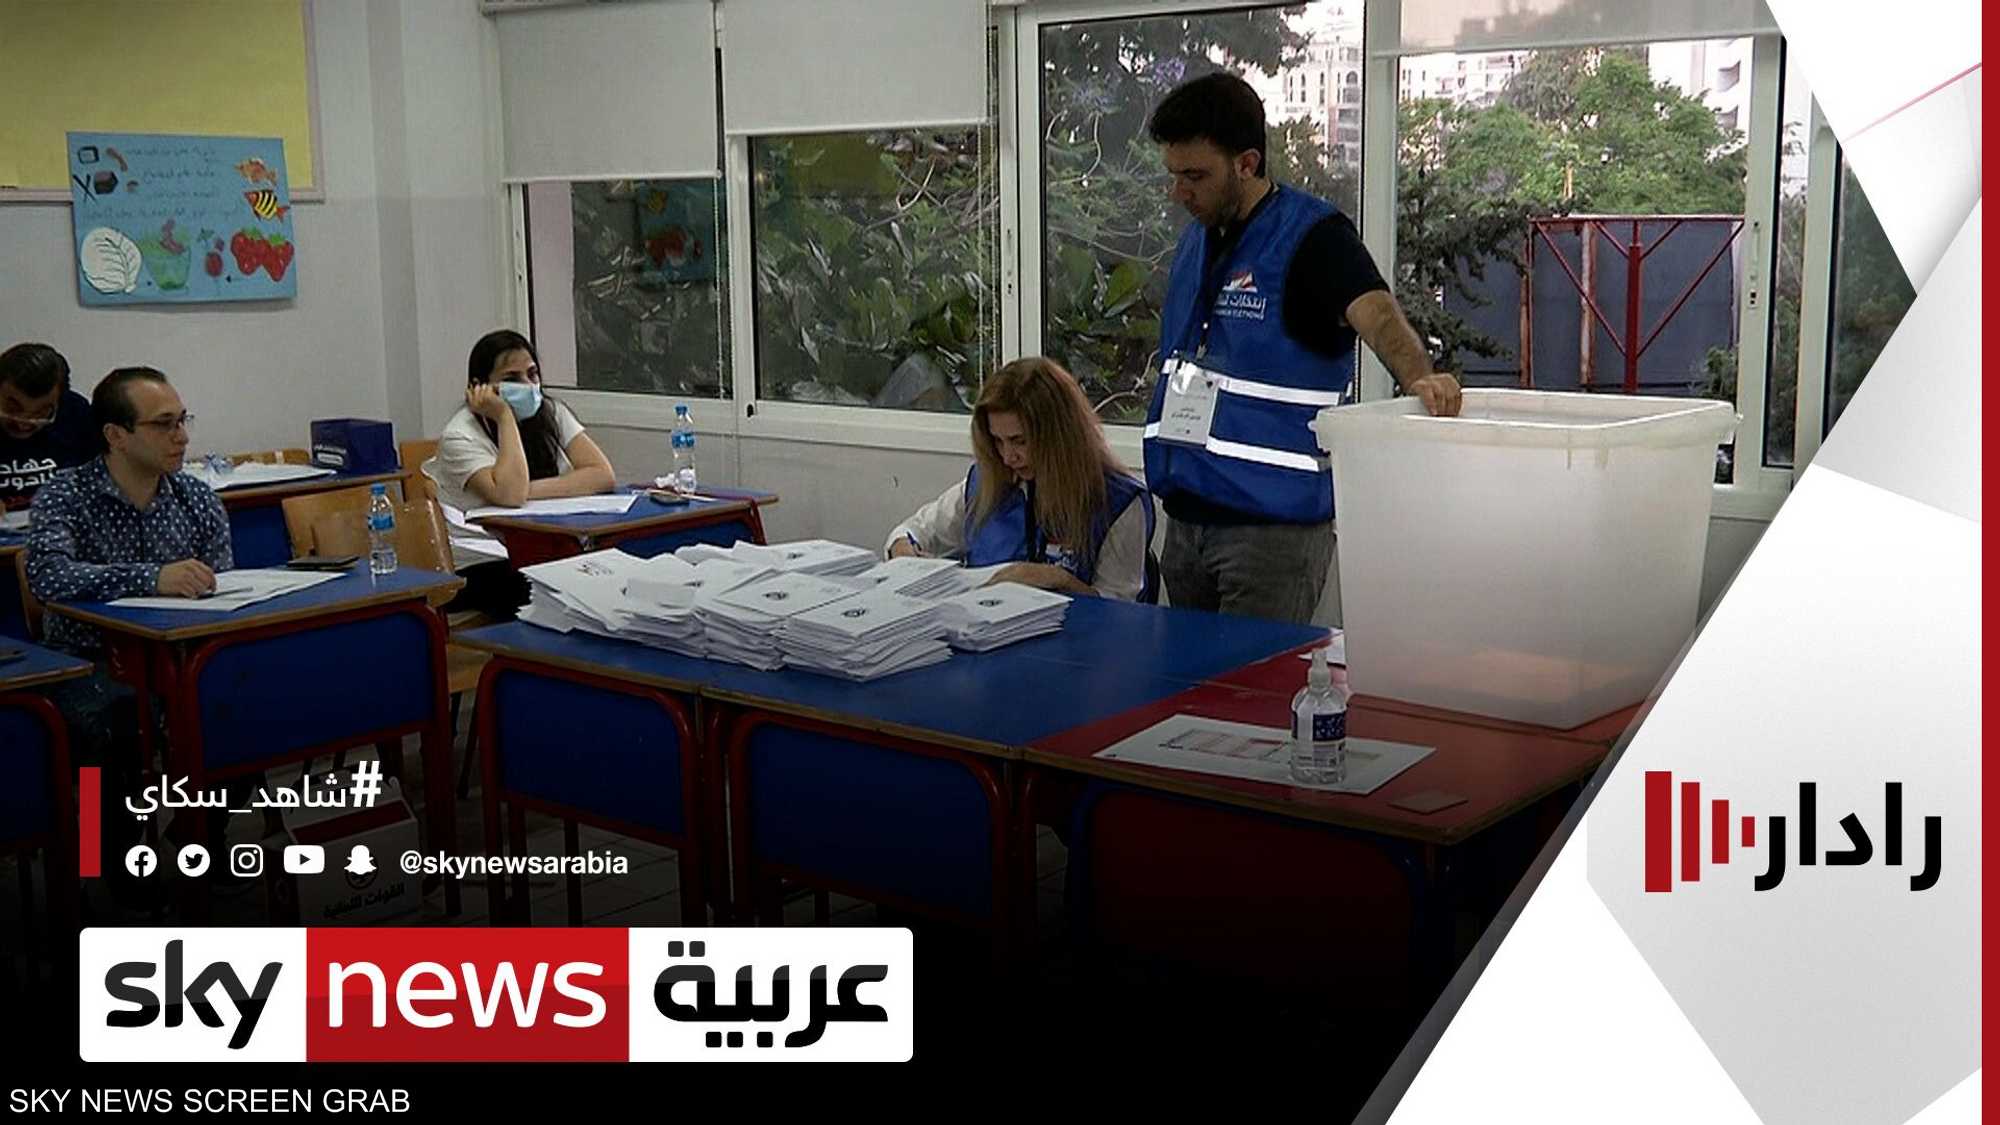 اللبنانيون يصوّتون لاختيار نوابهم وسط آمال بالتغيير